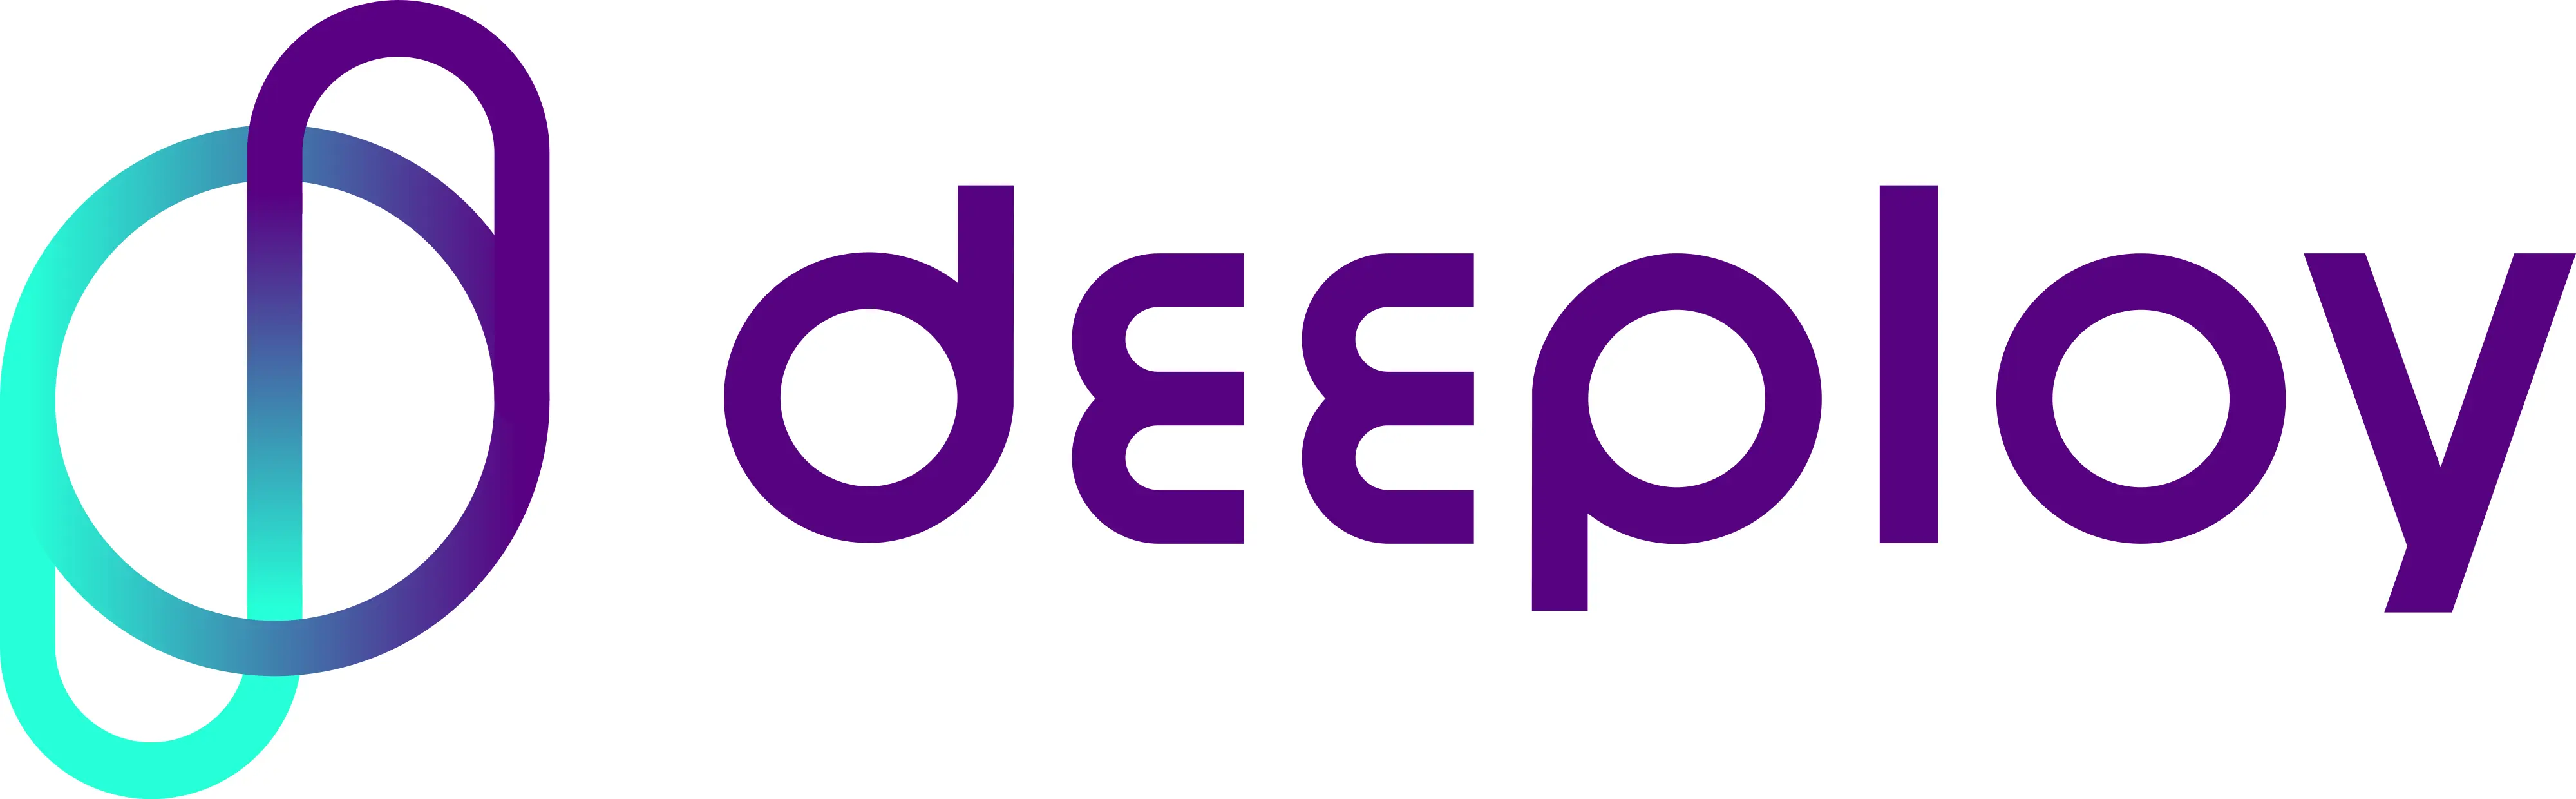 Deeploy logo